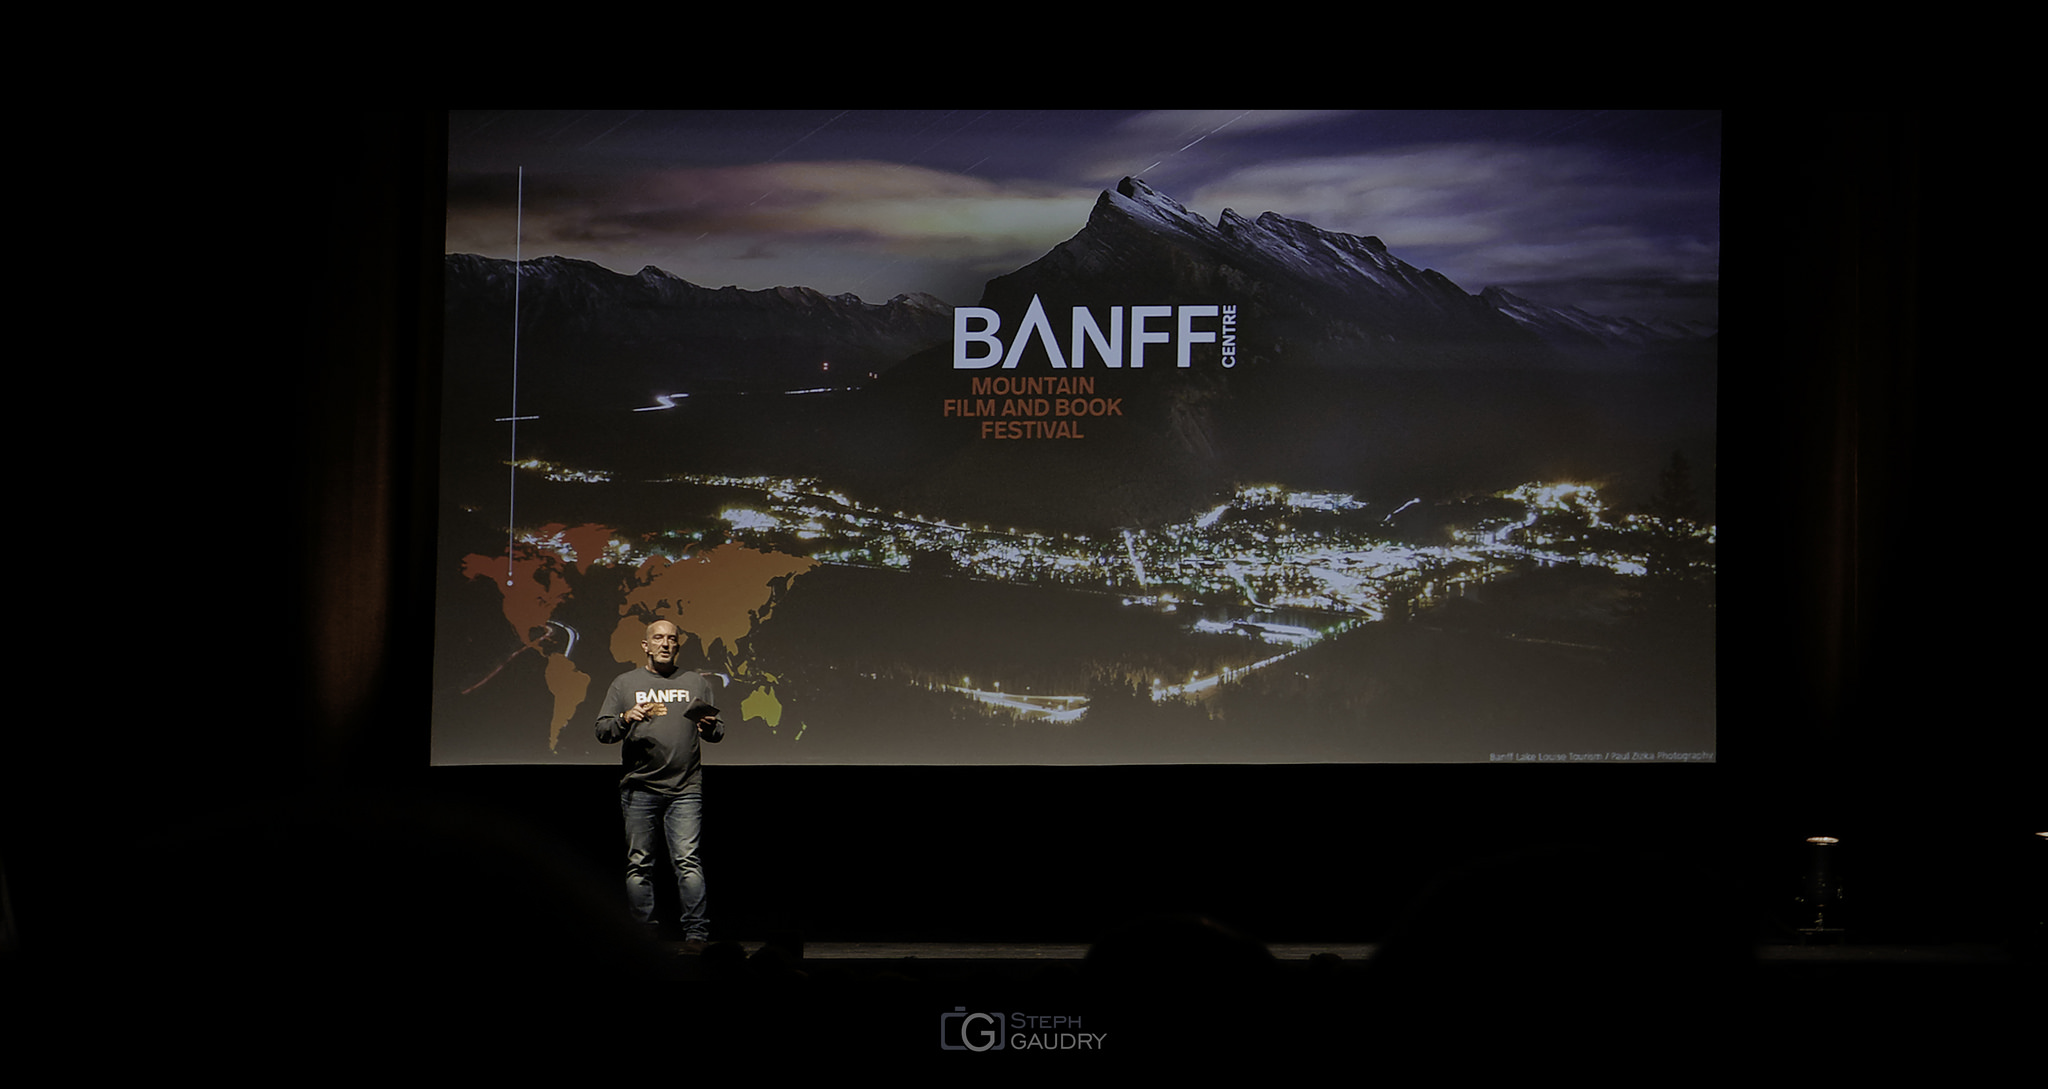 BANFF Mountain film and book festival [Klicken Sie hier, um die Diashow zu starten]